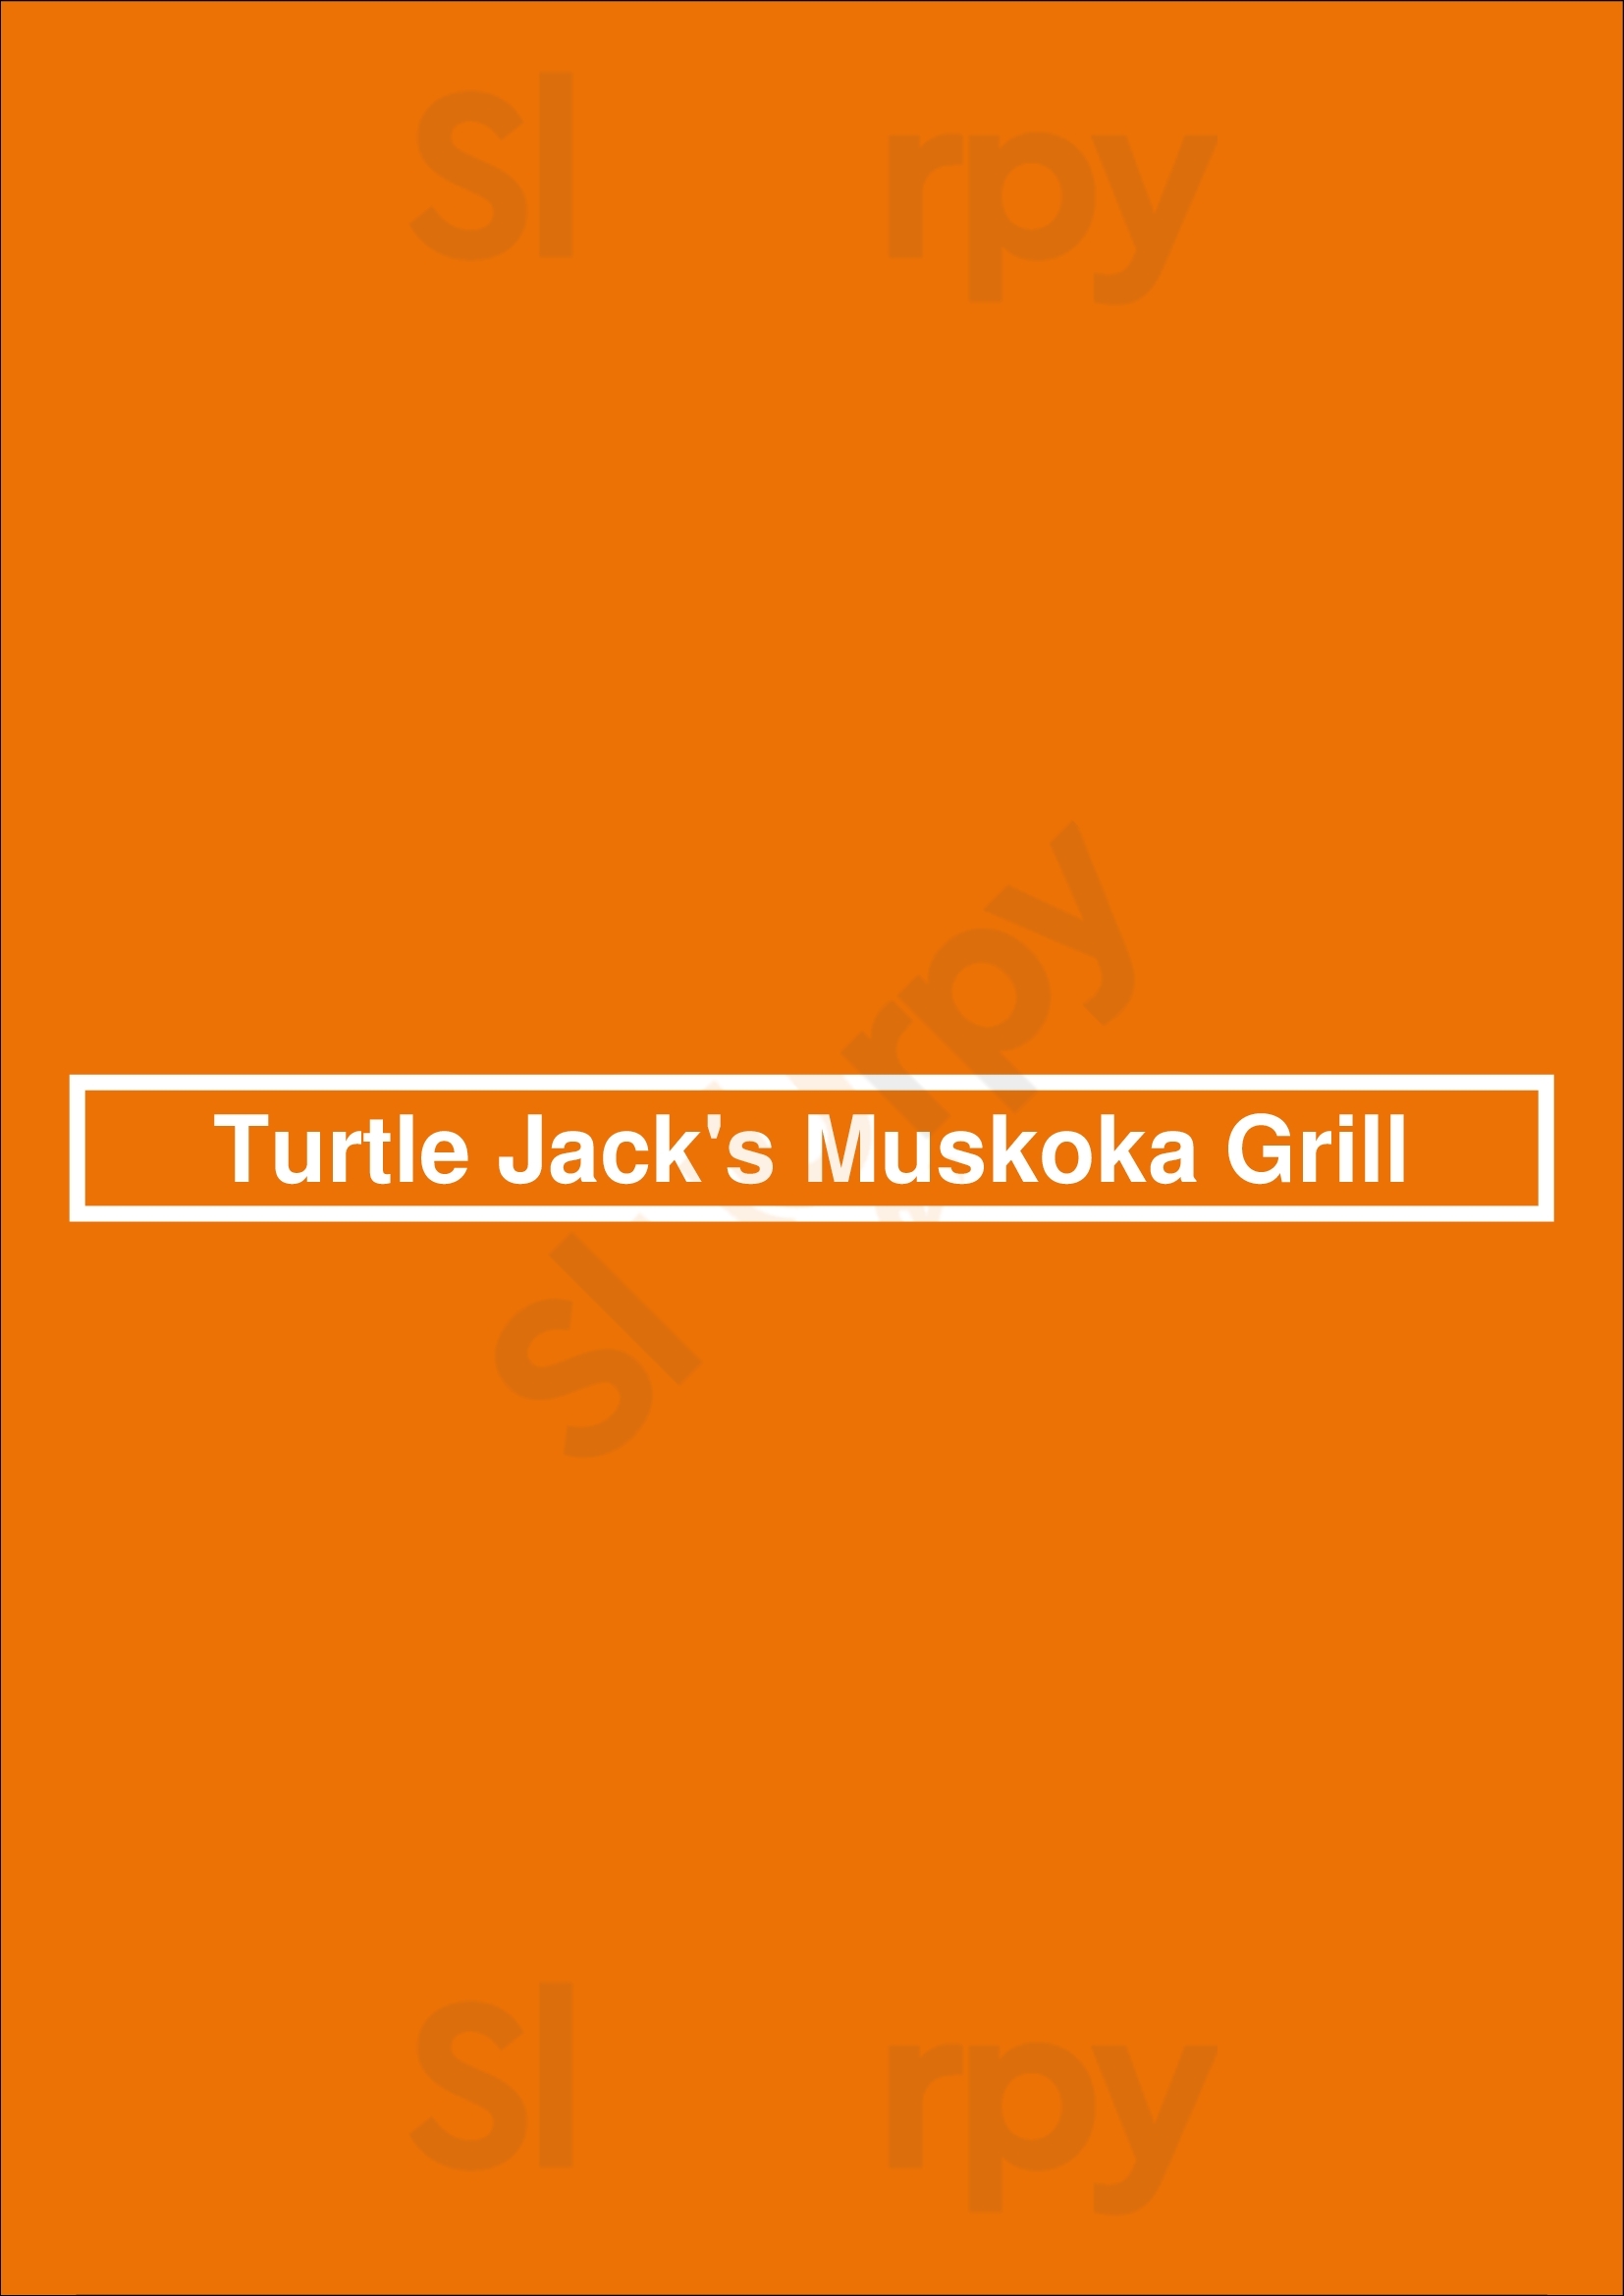 Turtle Jack's Appleby Burlington Menu - 1